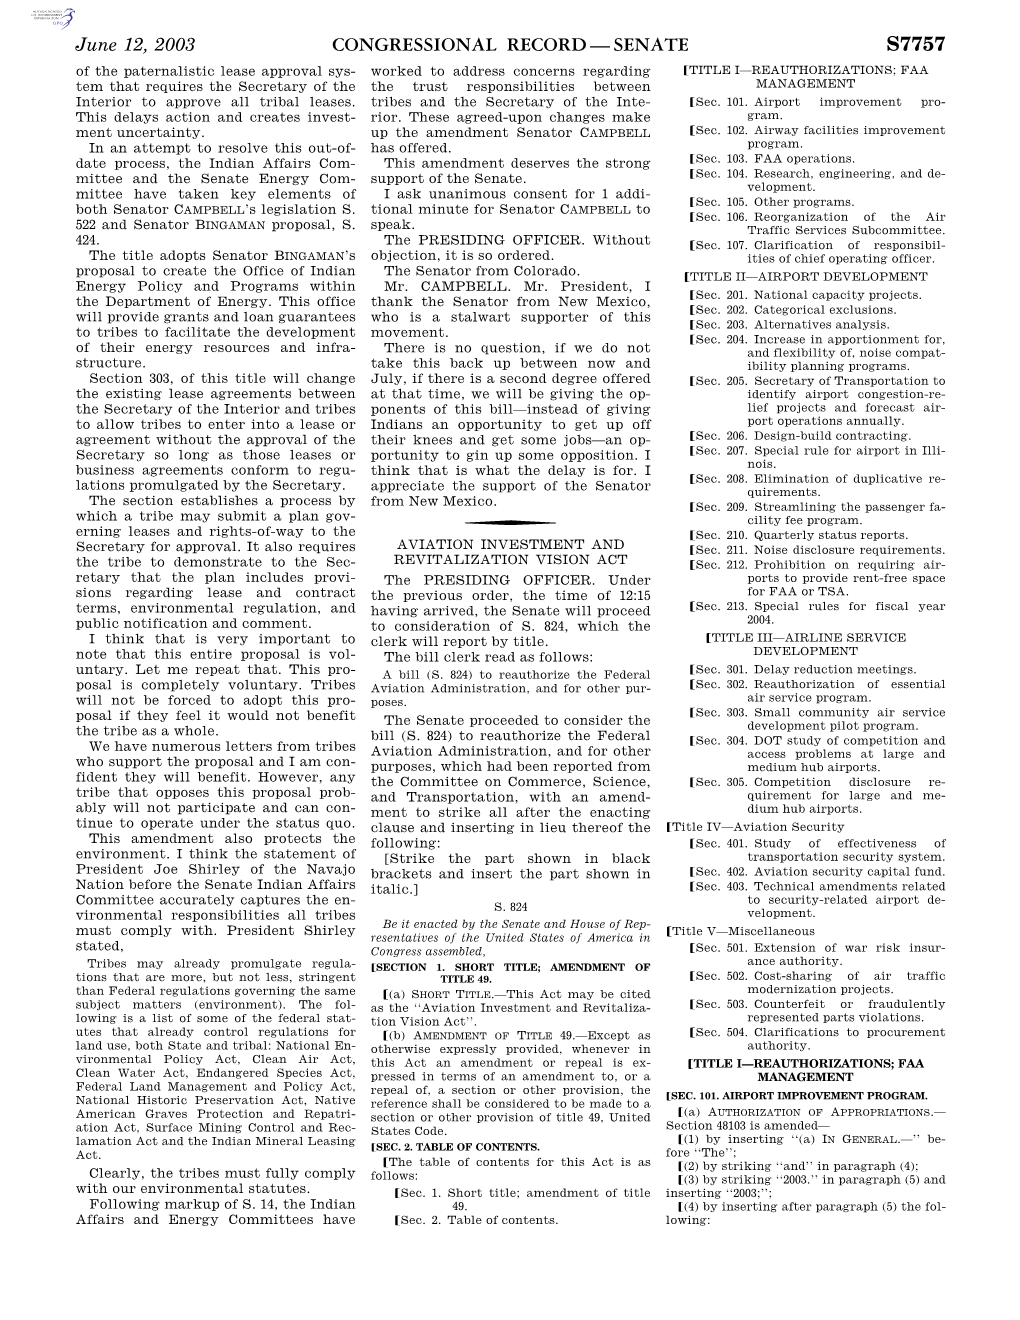 Congressional Record—Senate S7757